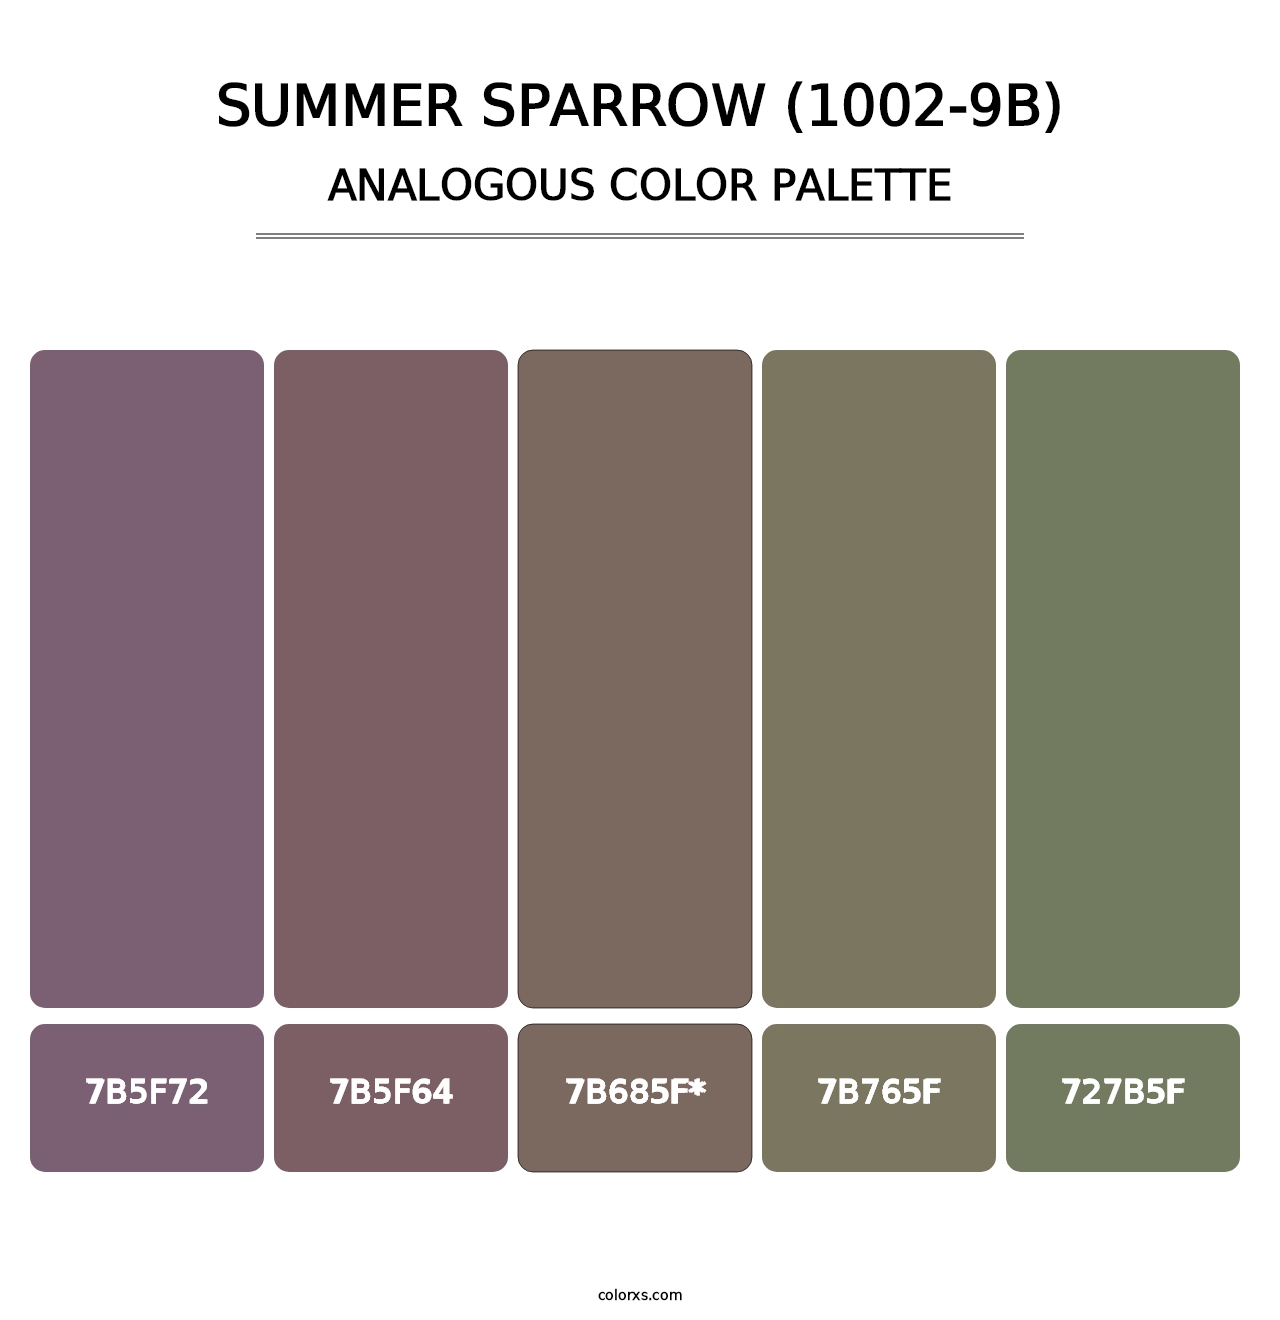 Summer Sparrow (1002-9B) - Analogous Color Palette